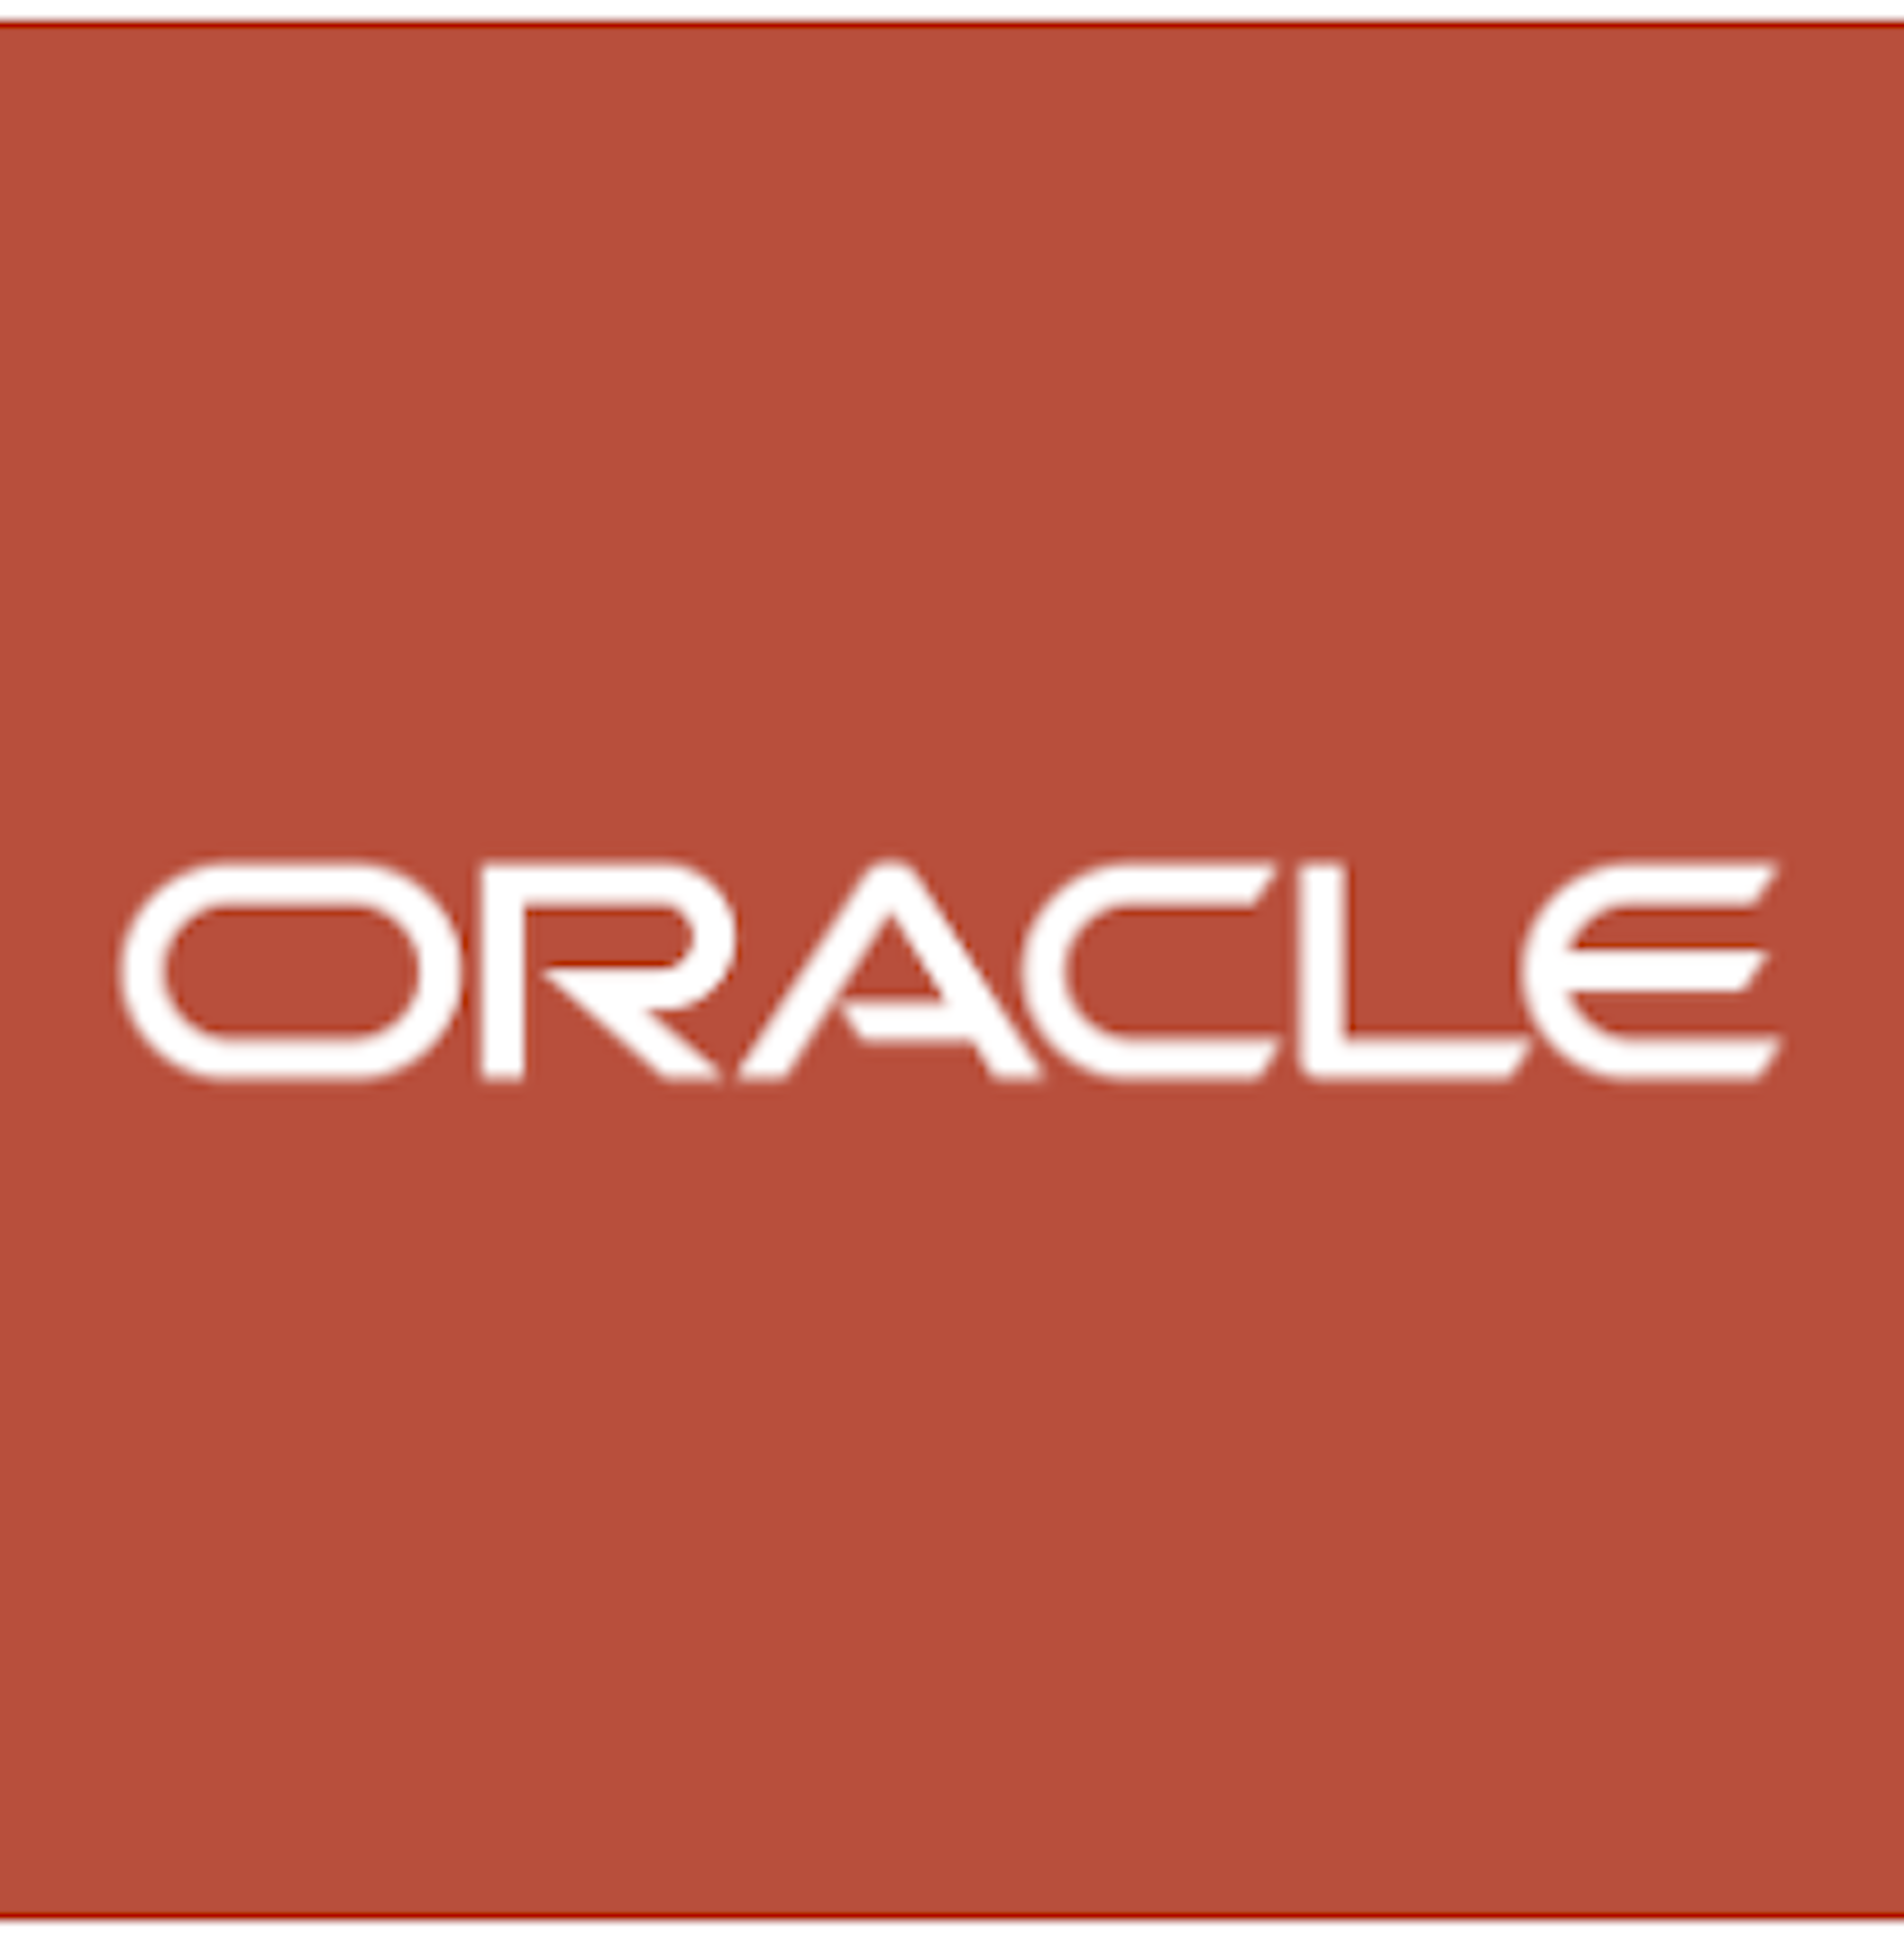 Oracle Marketing Logo